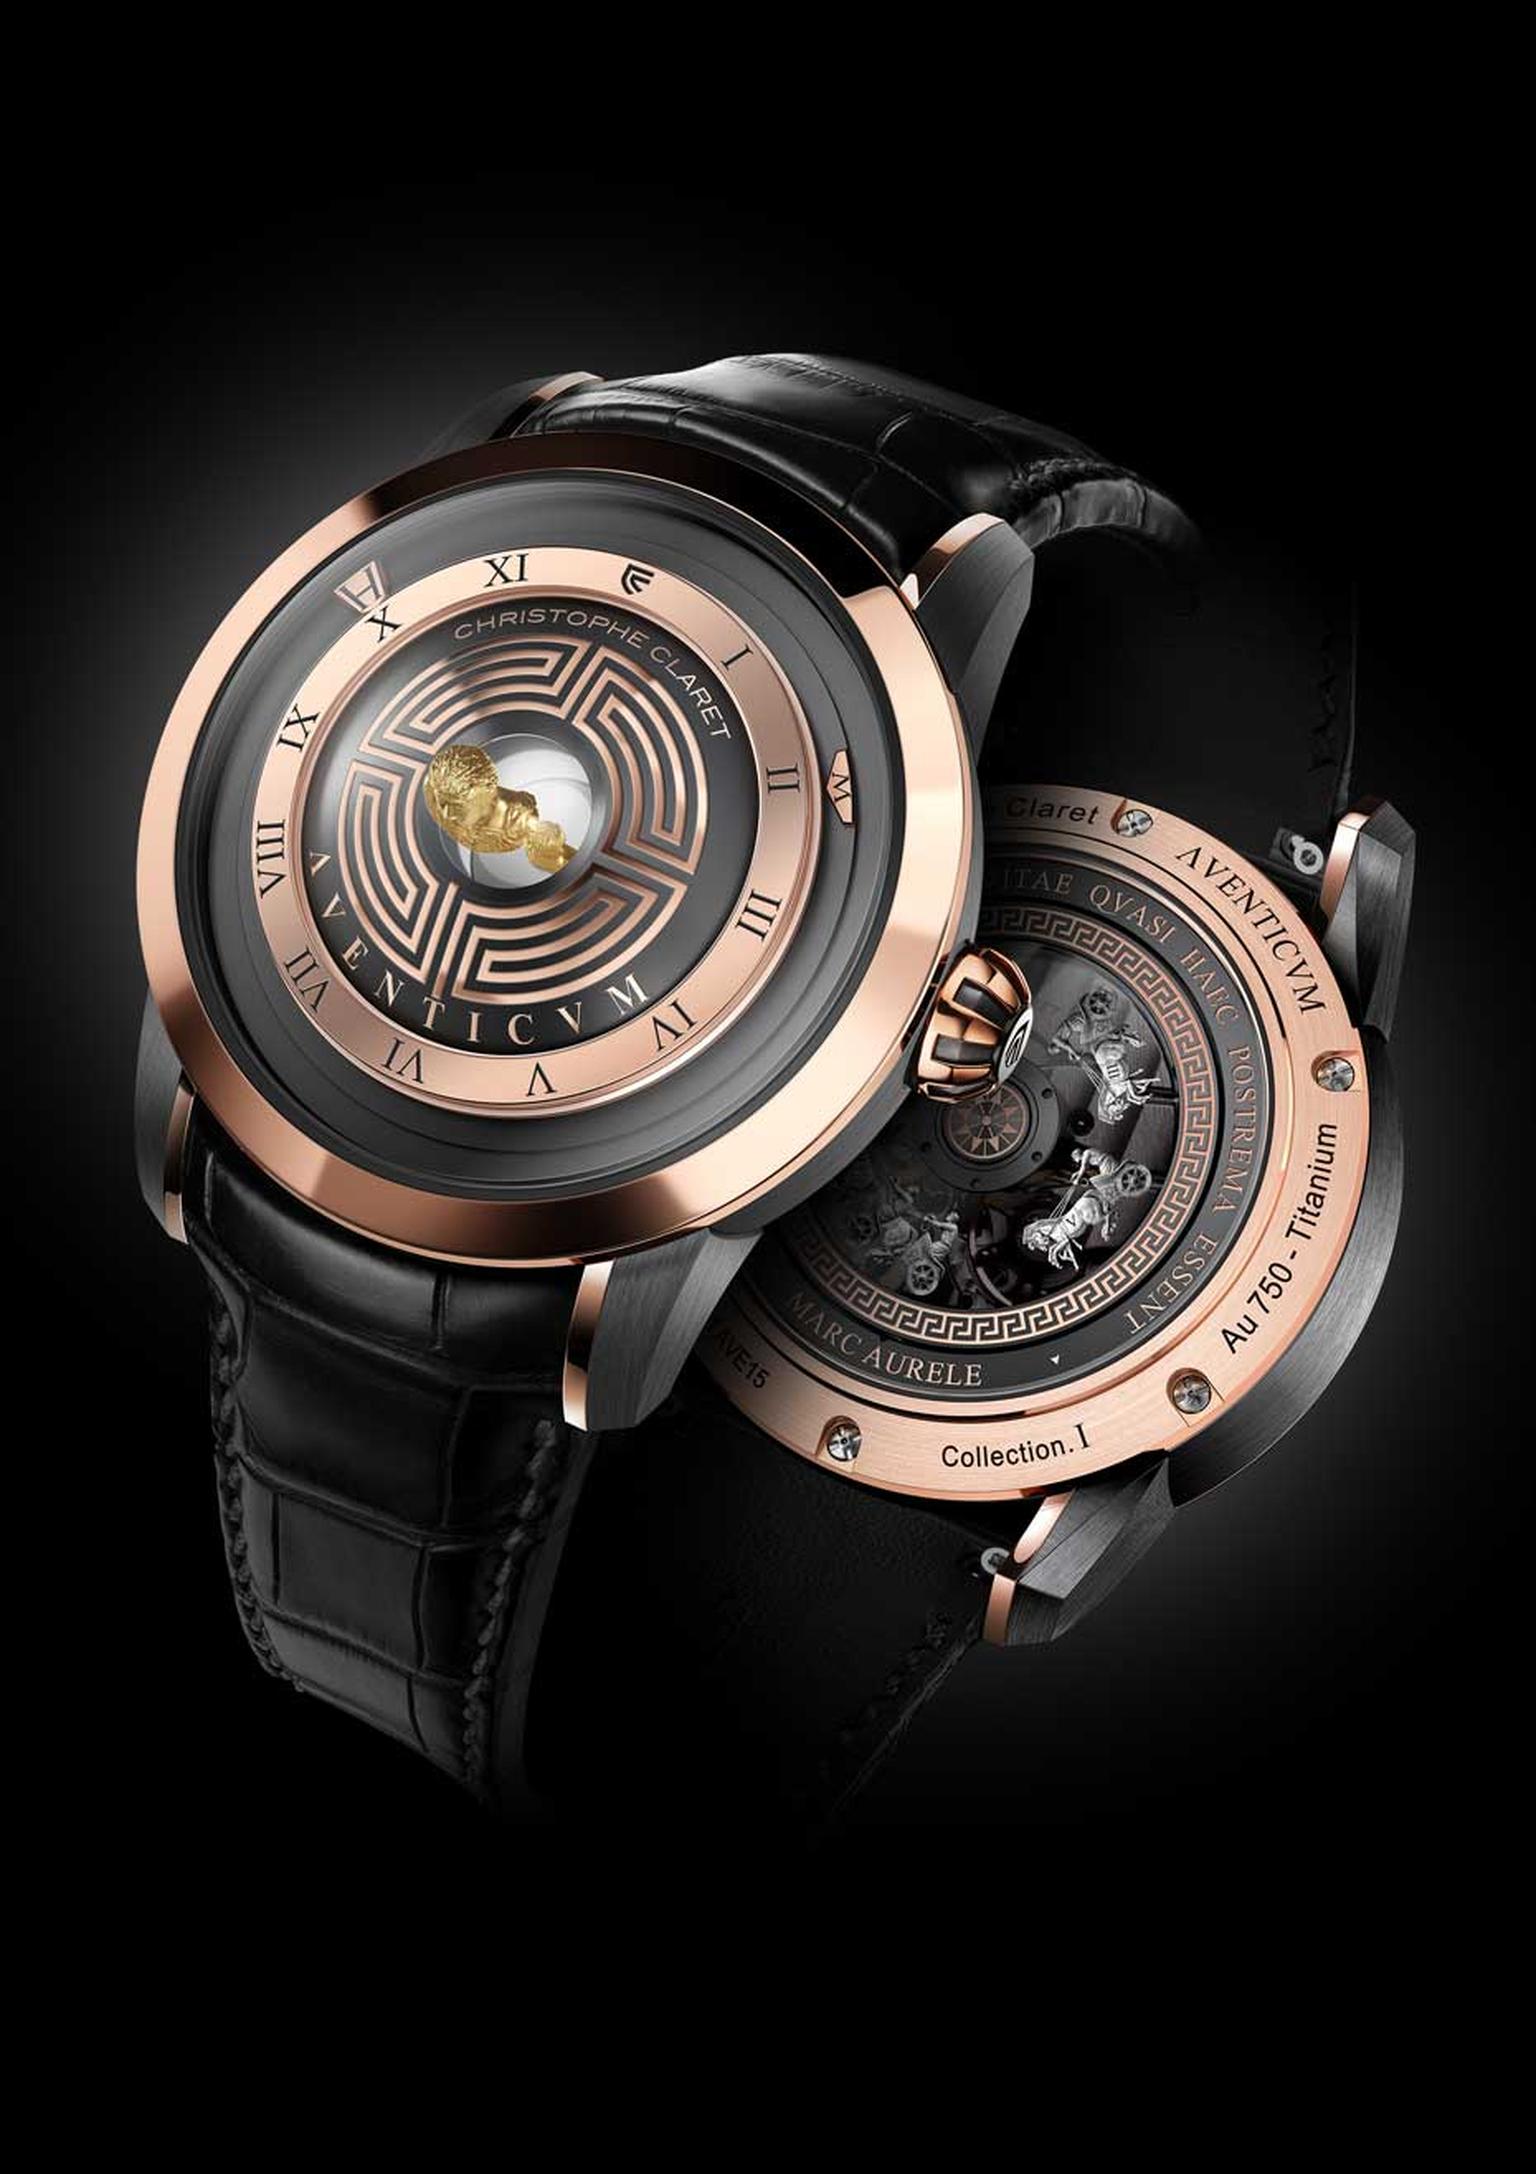 The Christophe Claret Aventicum watch is dedicated to Roman emperor Marcus Aurelius.